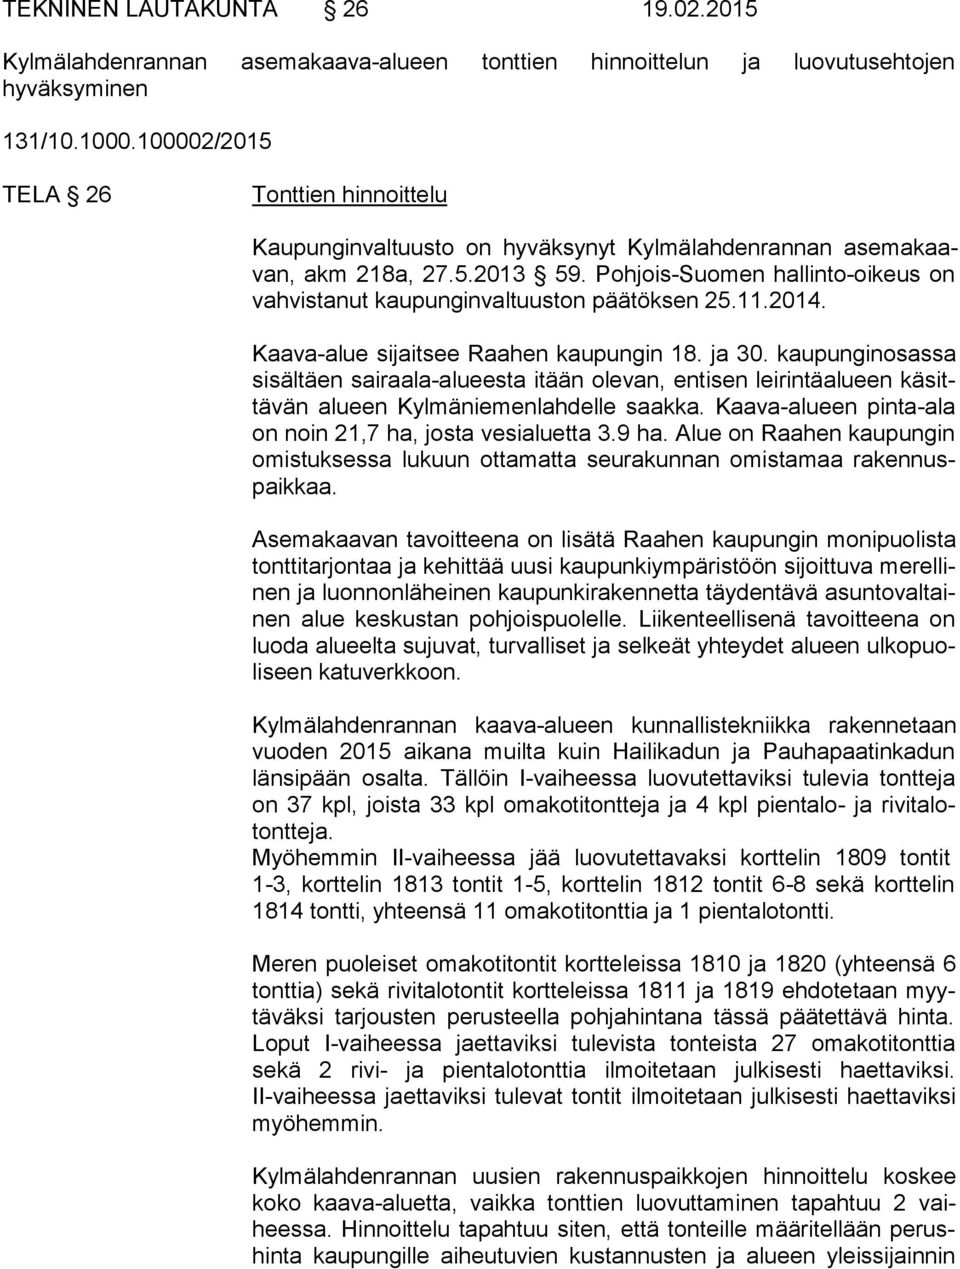 Pohjois-Suomen hallinto-oikeus on vah vis ta nut kaupunginvaltuuston päätöksen 25.11.2014. Kaava-alue sijaitsee Raahen kaupungin 18. ja 30.